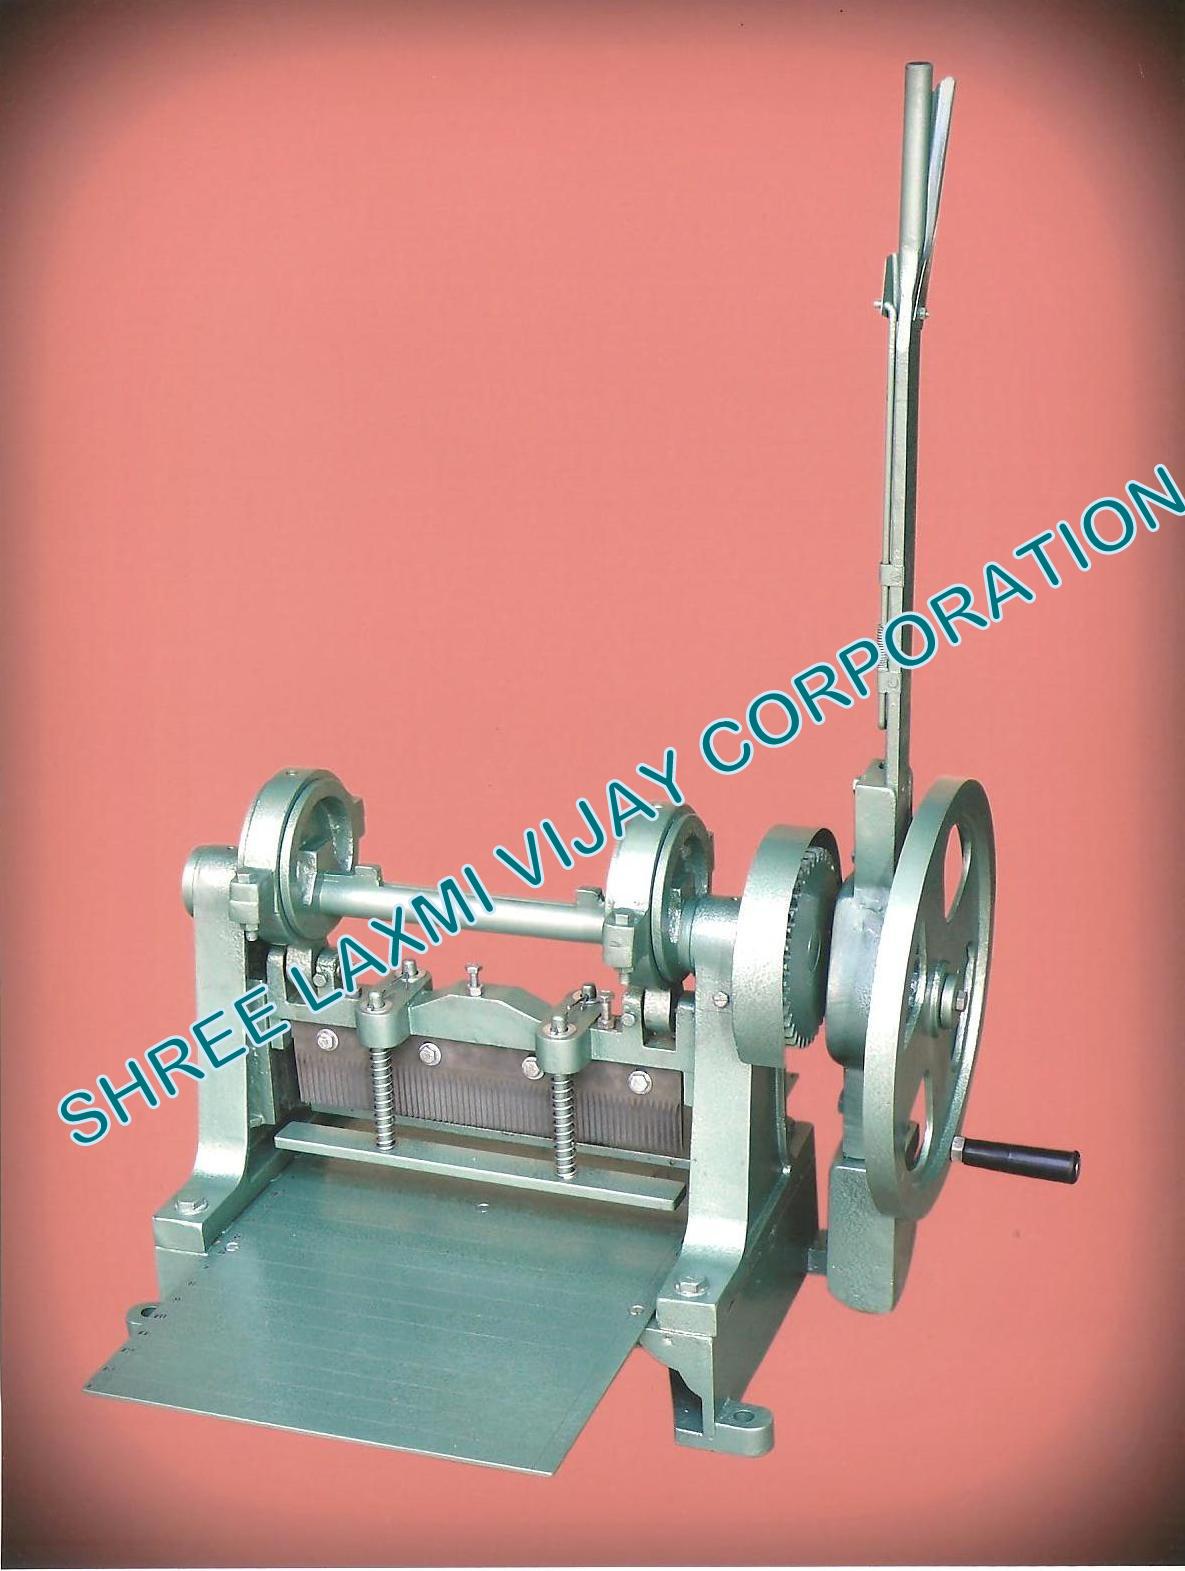 Fabric sample cutting machine